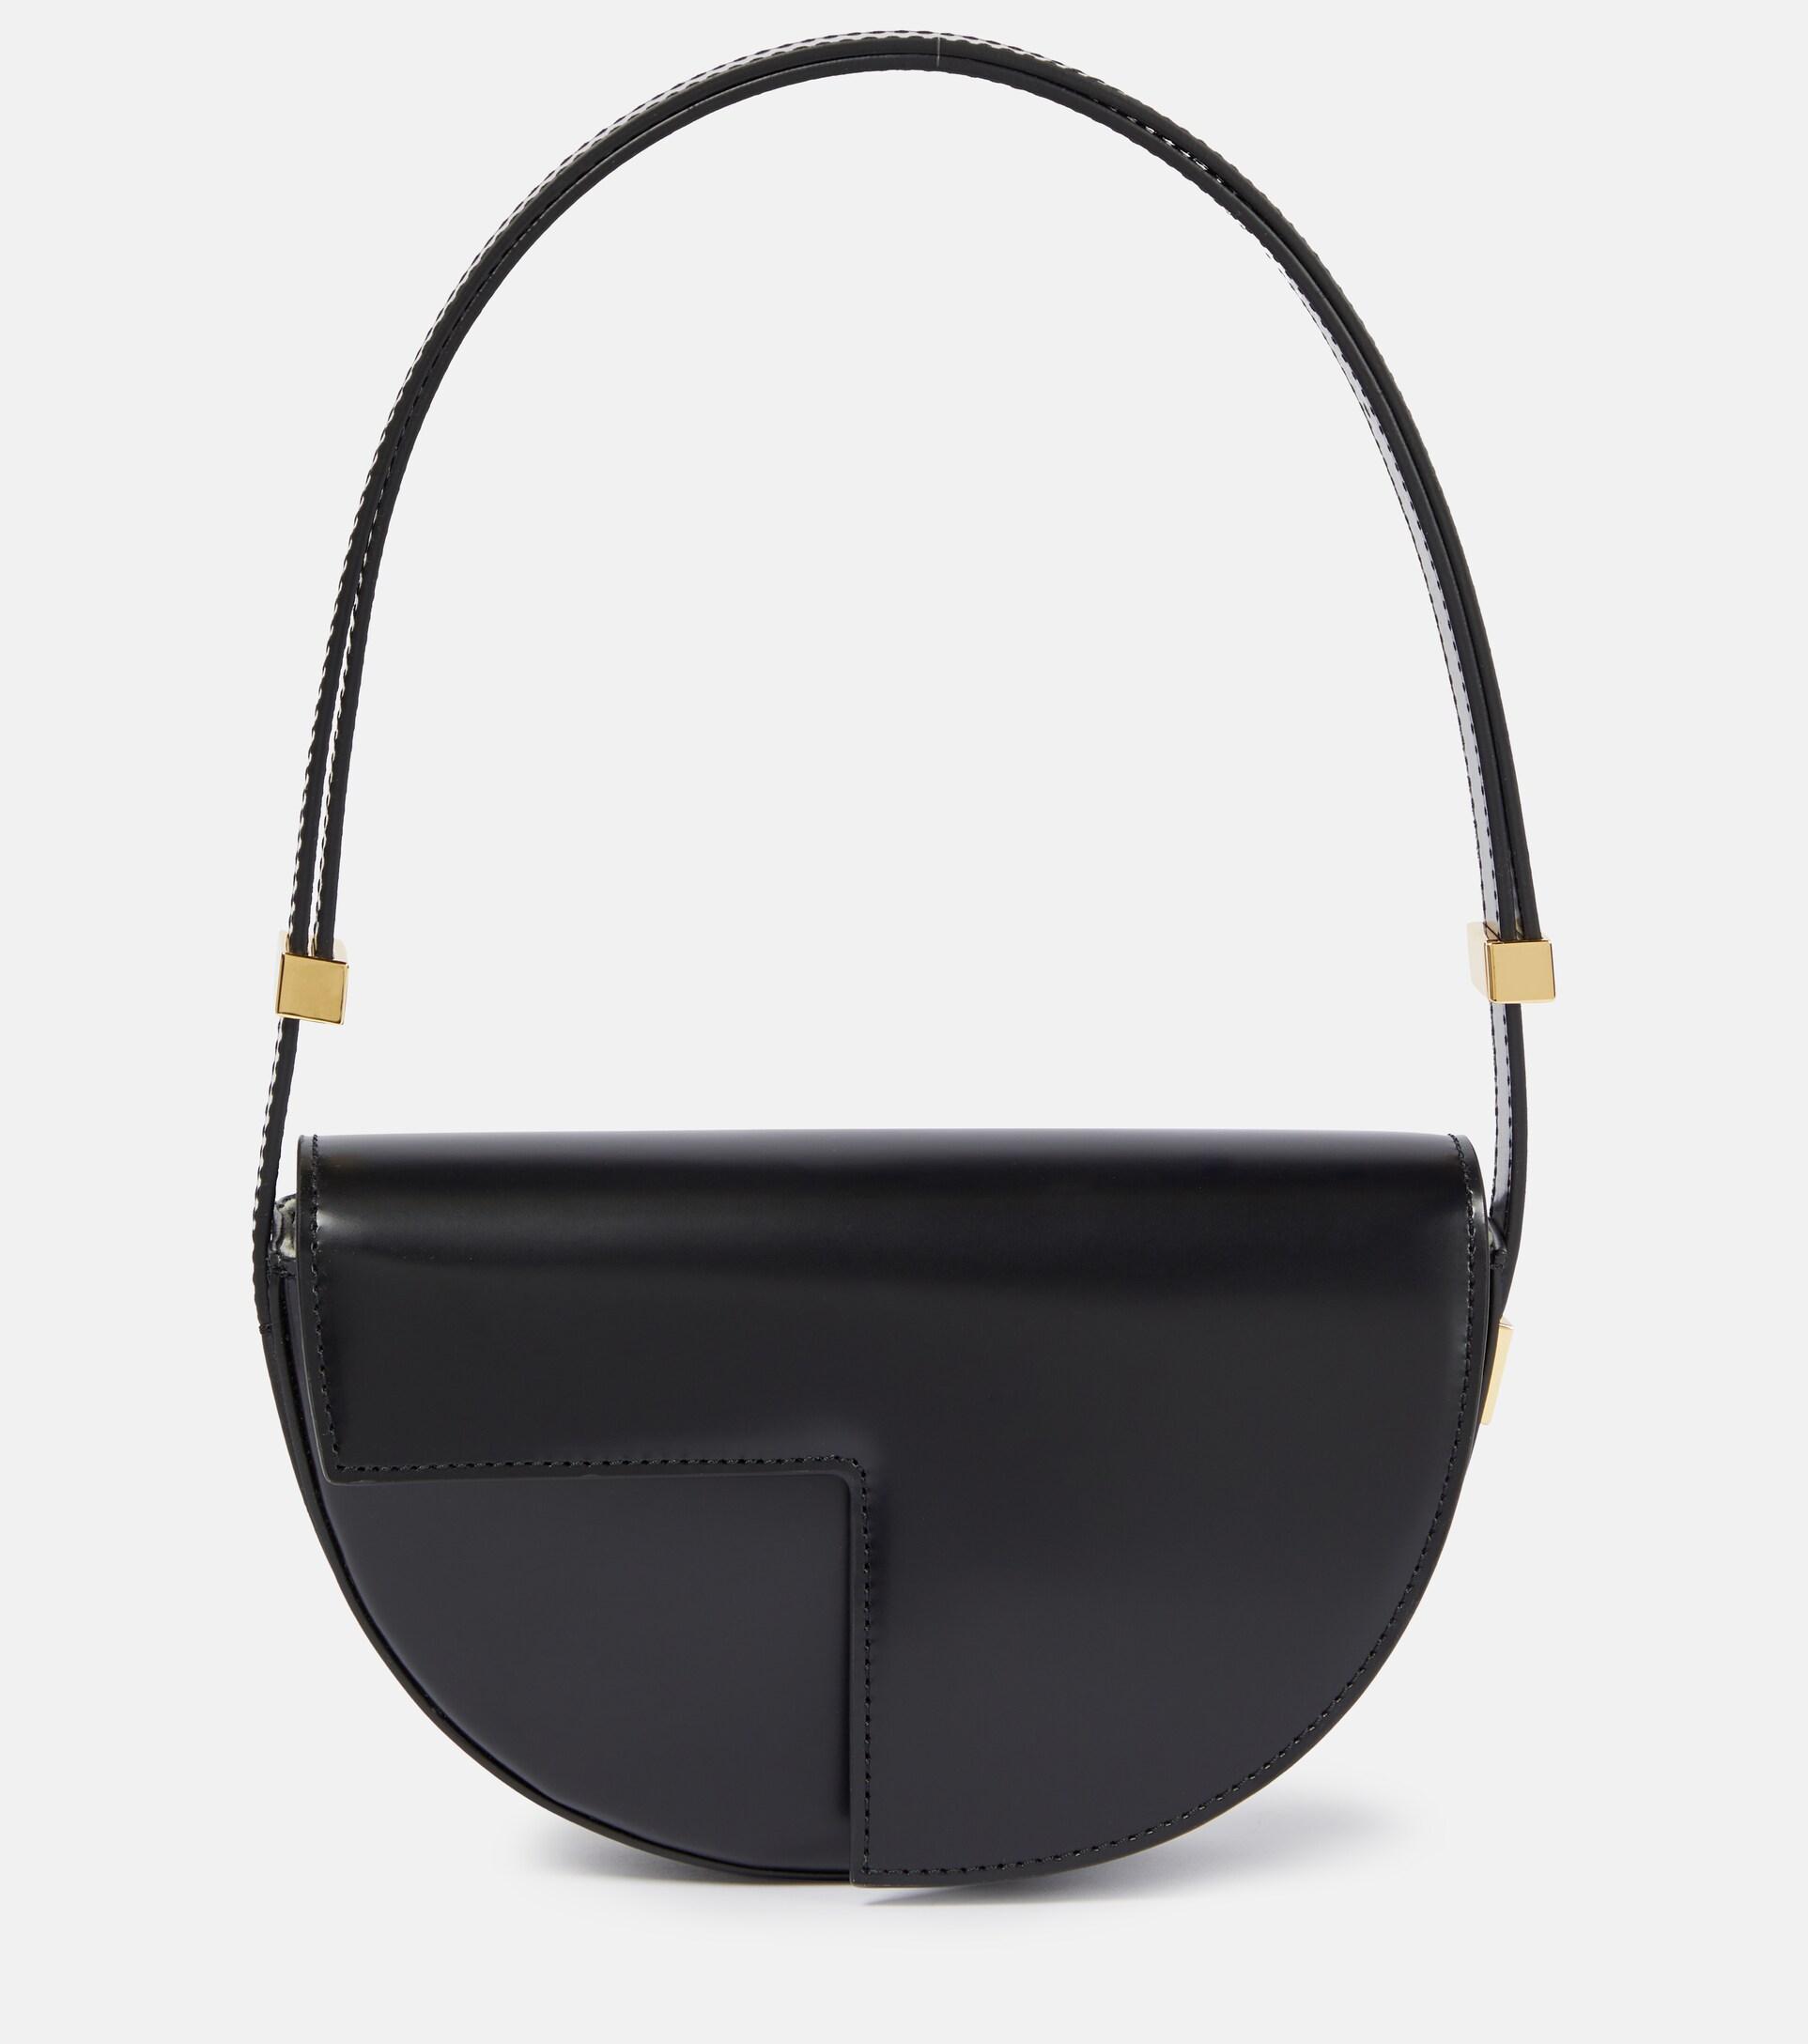 Patou Le Petit Leather Shoulder Bag in Black | Lyst